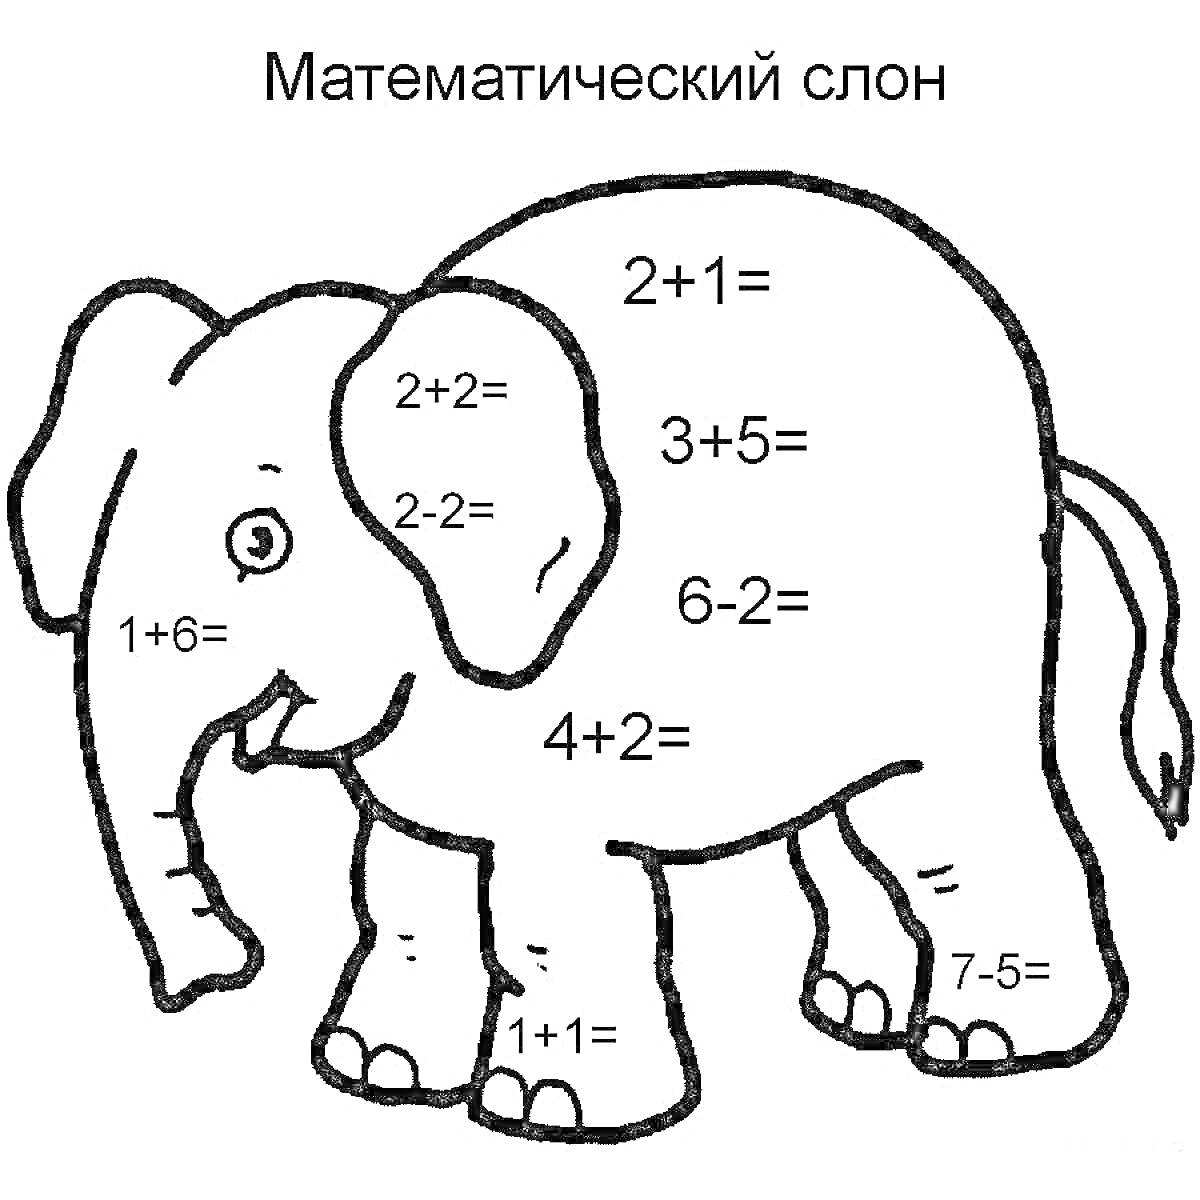 Раскраска Математический слон с примерами арифметических задач (сложение и вычитание)